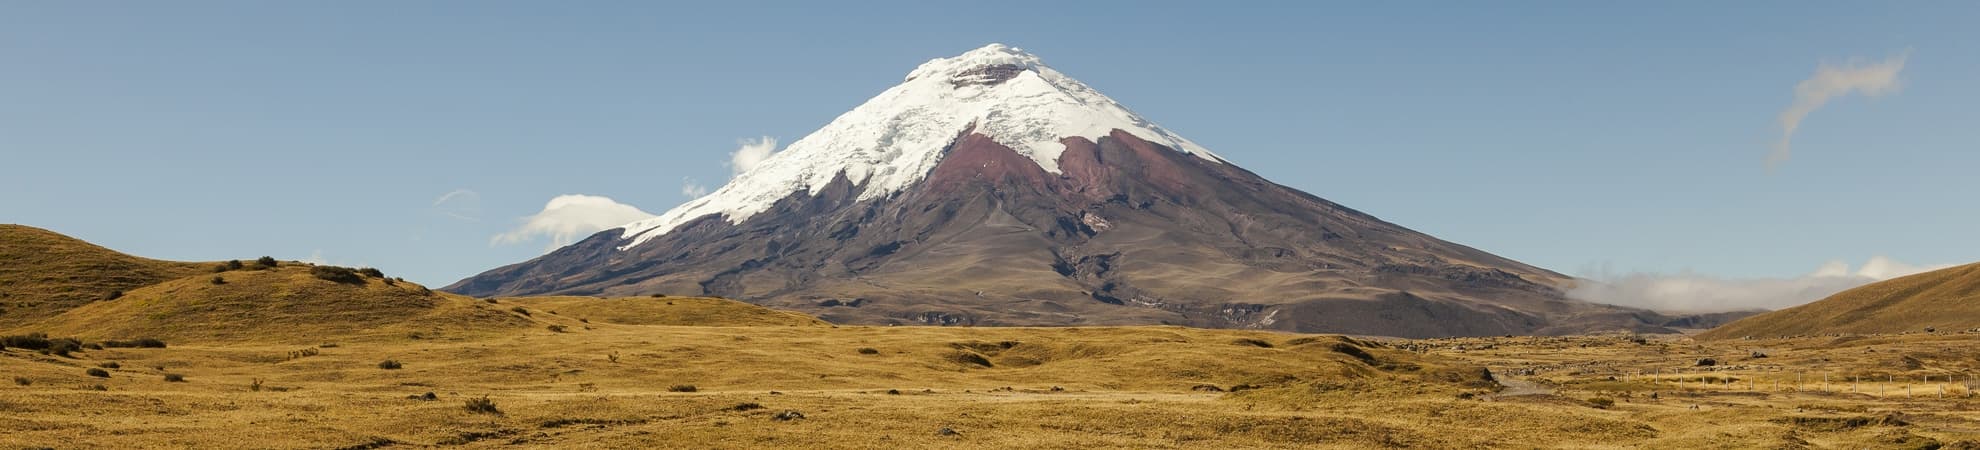 Voyage La Sierra en Equateur